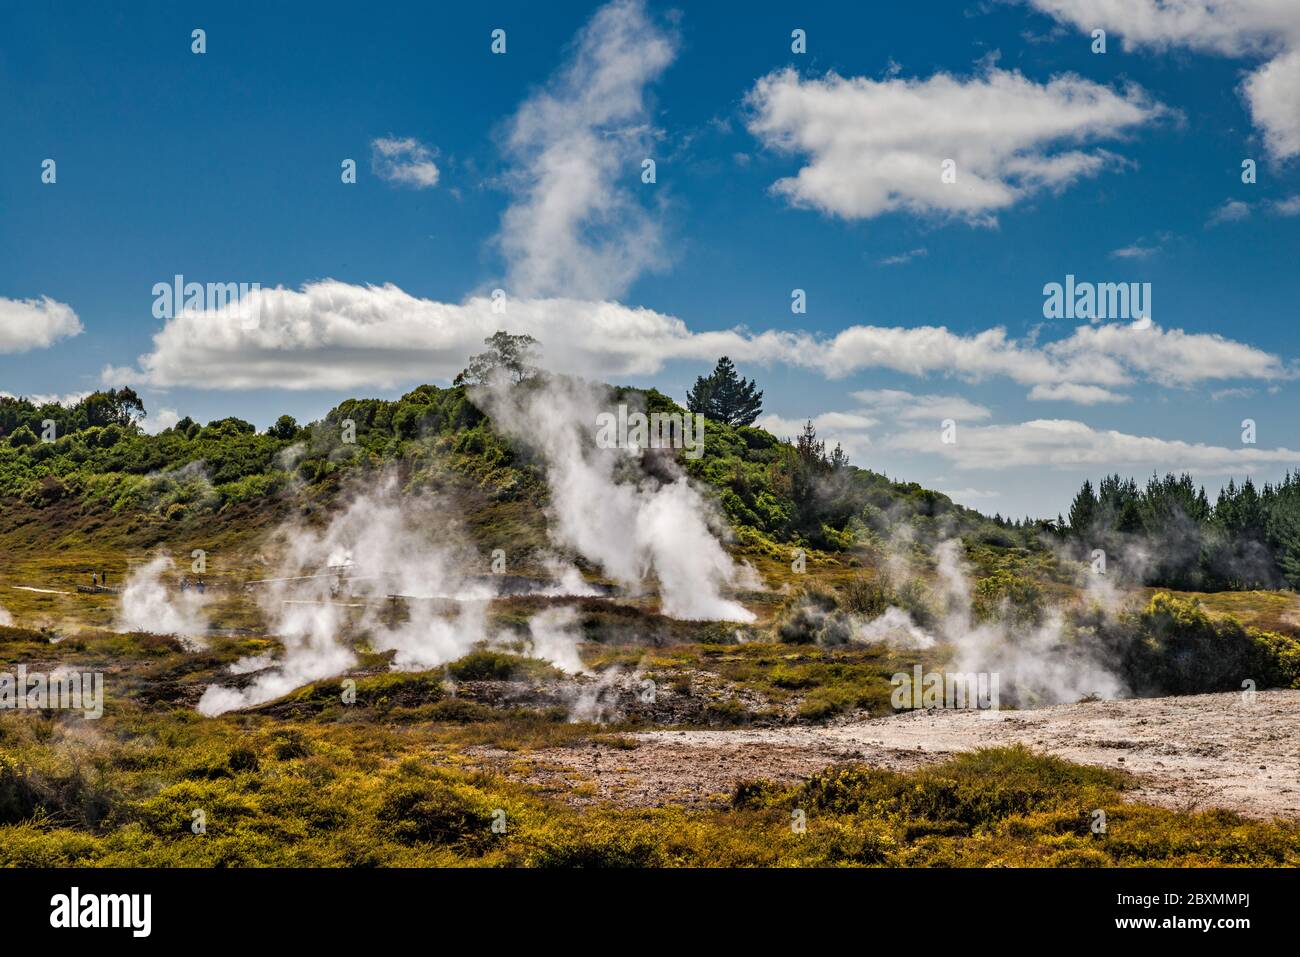 Campo di fumarole presso i Craters of the Moon Thermal Area, Waikato Region, North Island, New Zealand Foto Stock